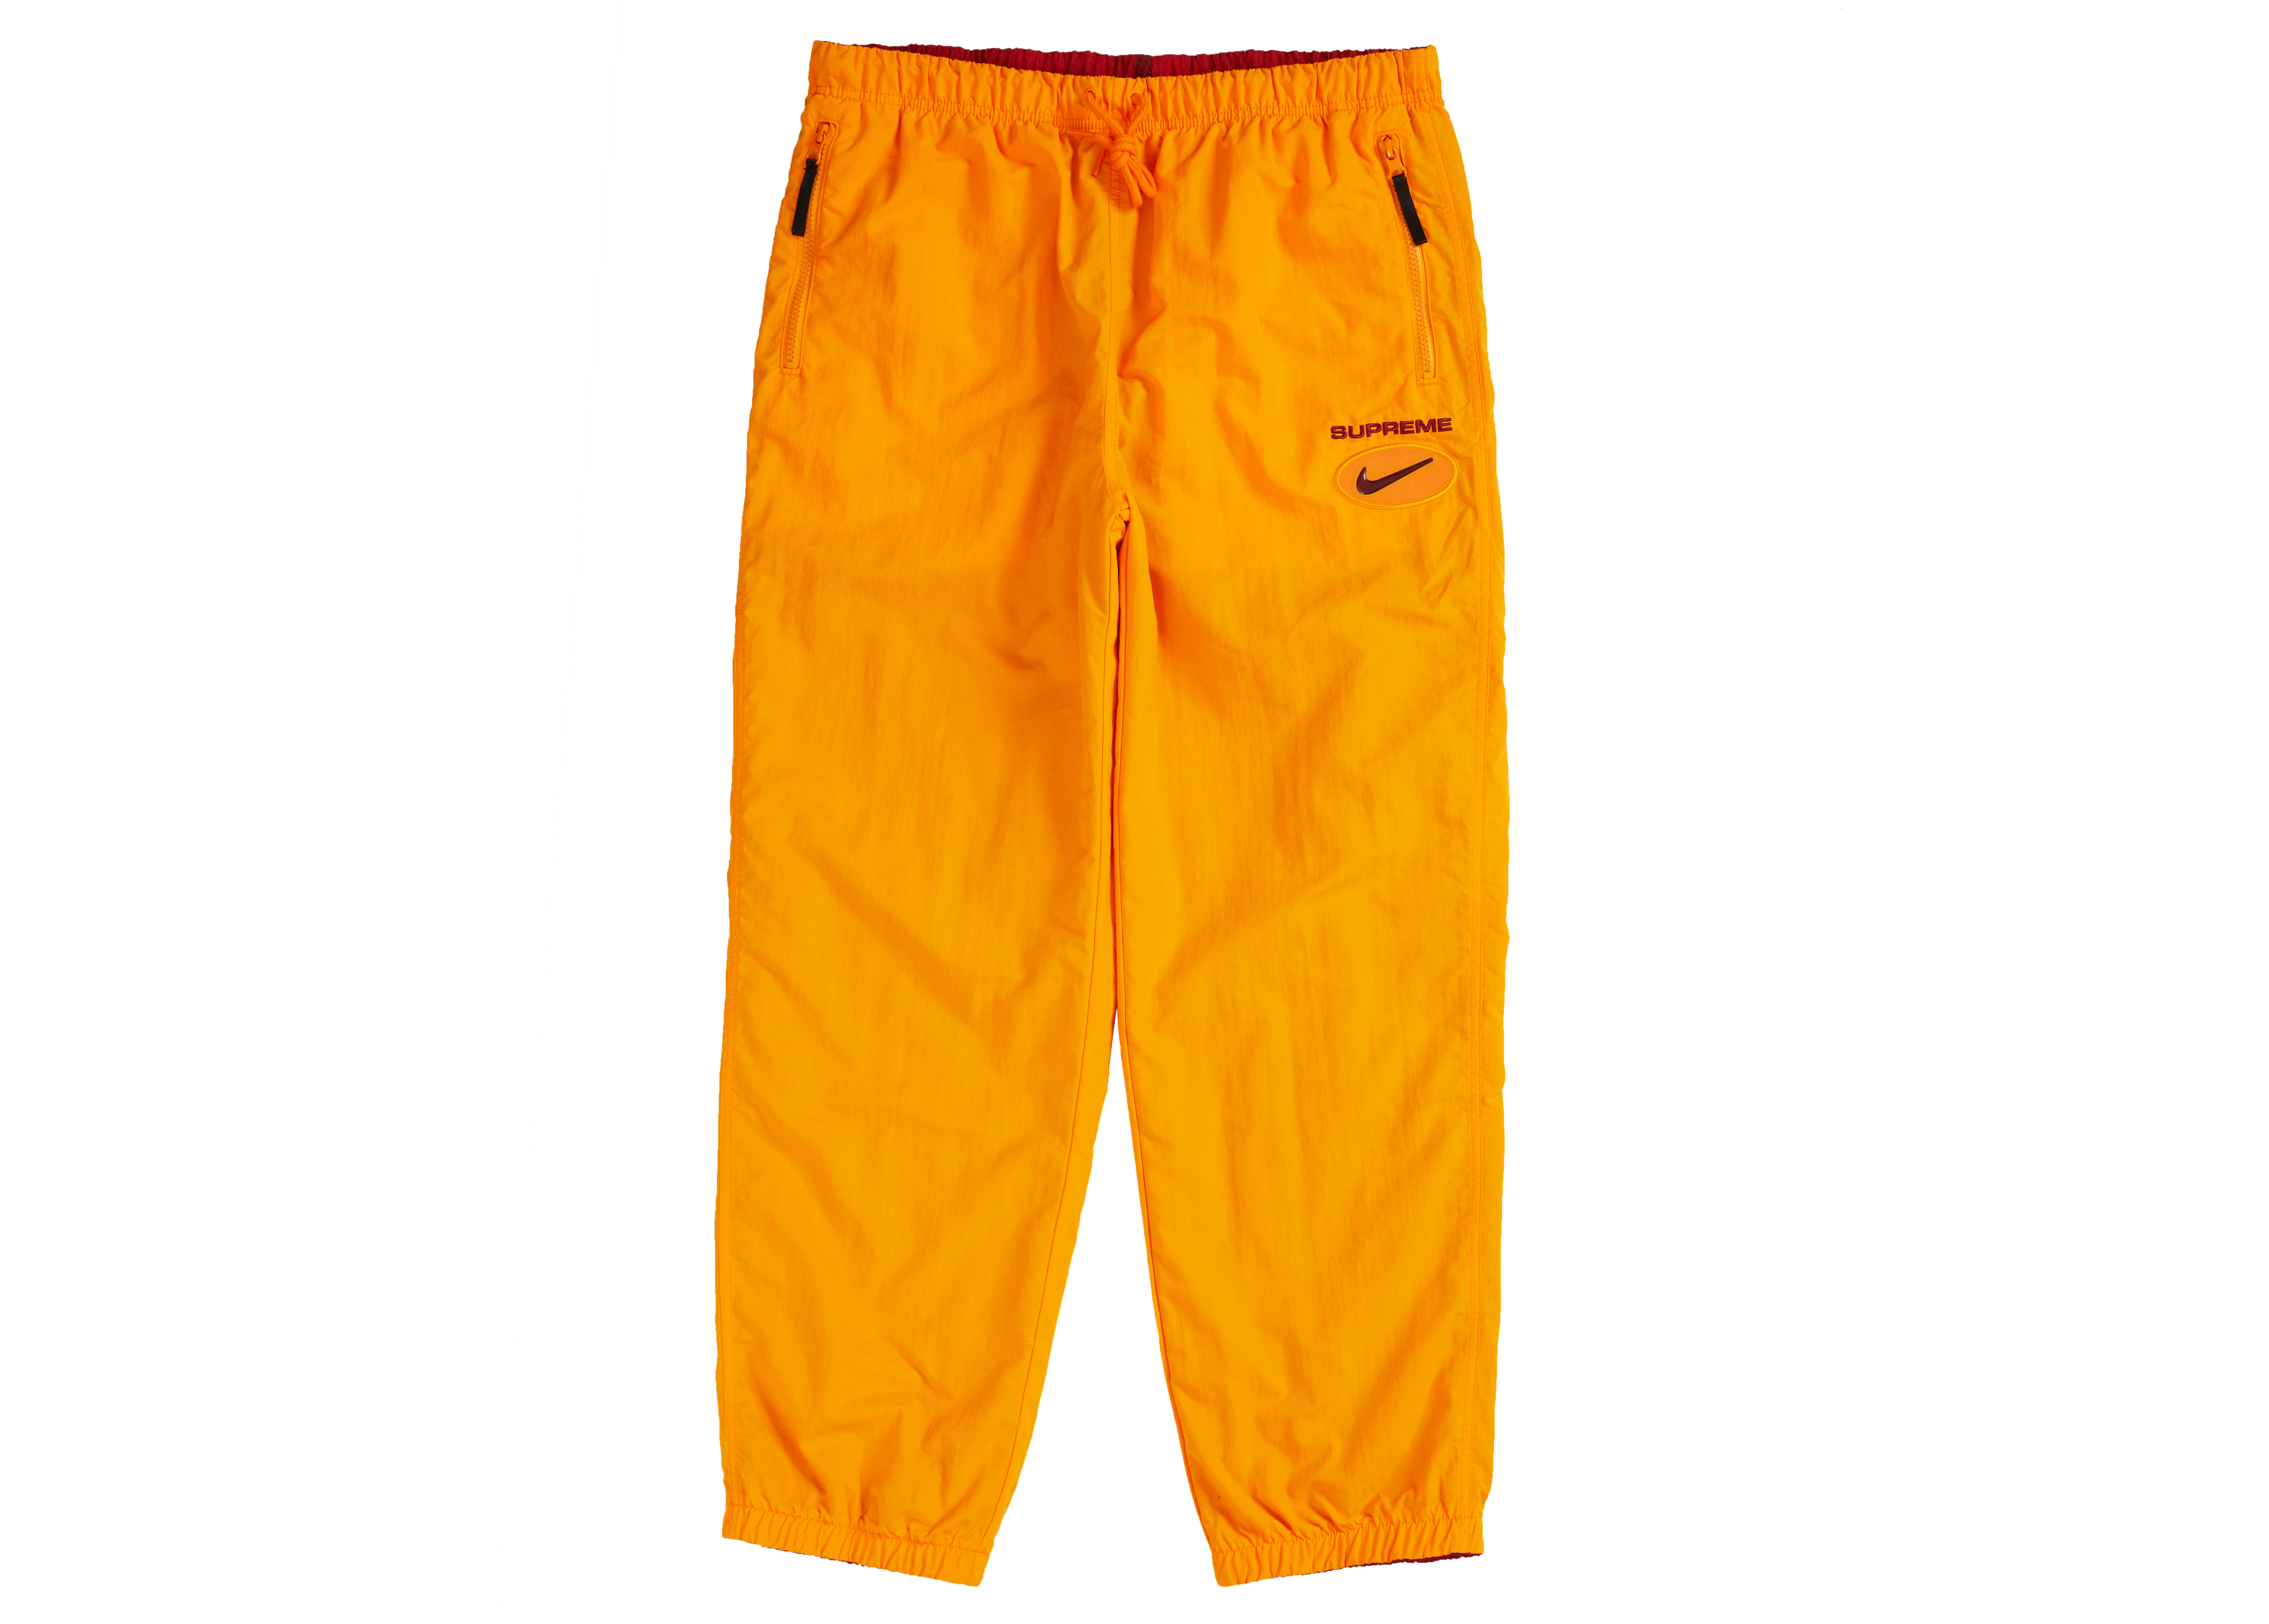 Supreme x Nike Jewel Reversible Ripstop Pant Orange - Novelship